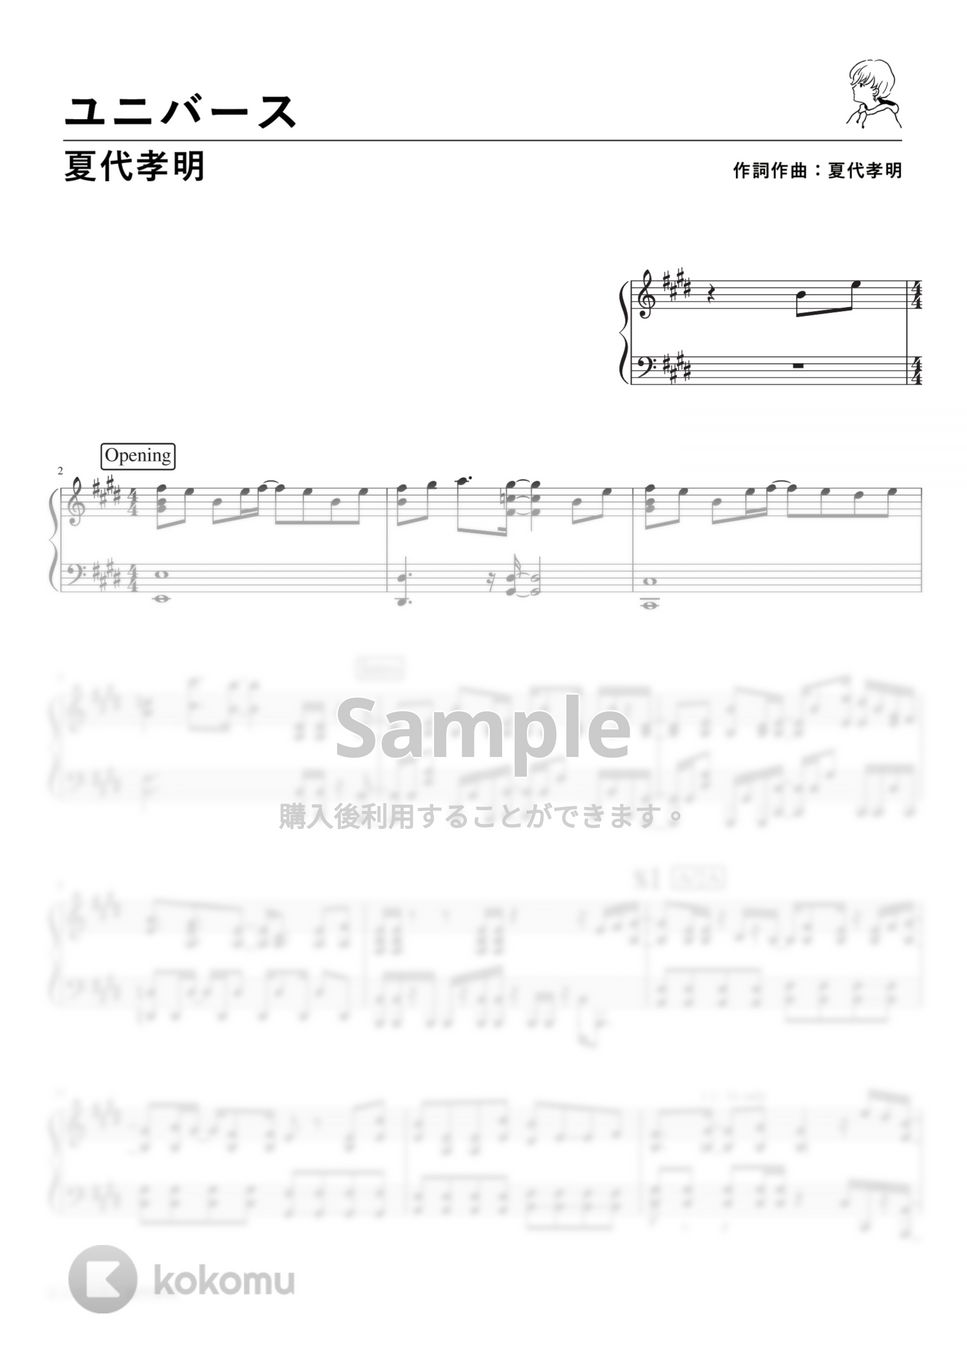 夏代孝明 - ユニバース (PianoSolo) by 深根 / Fukane